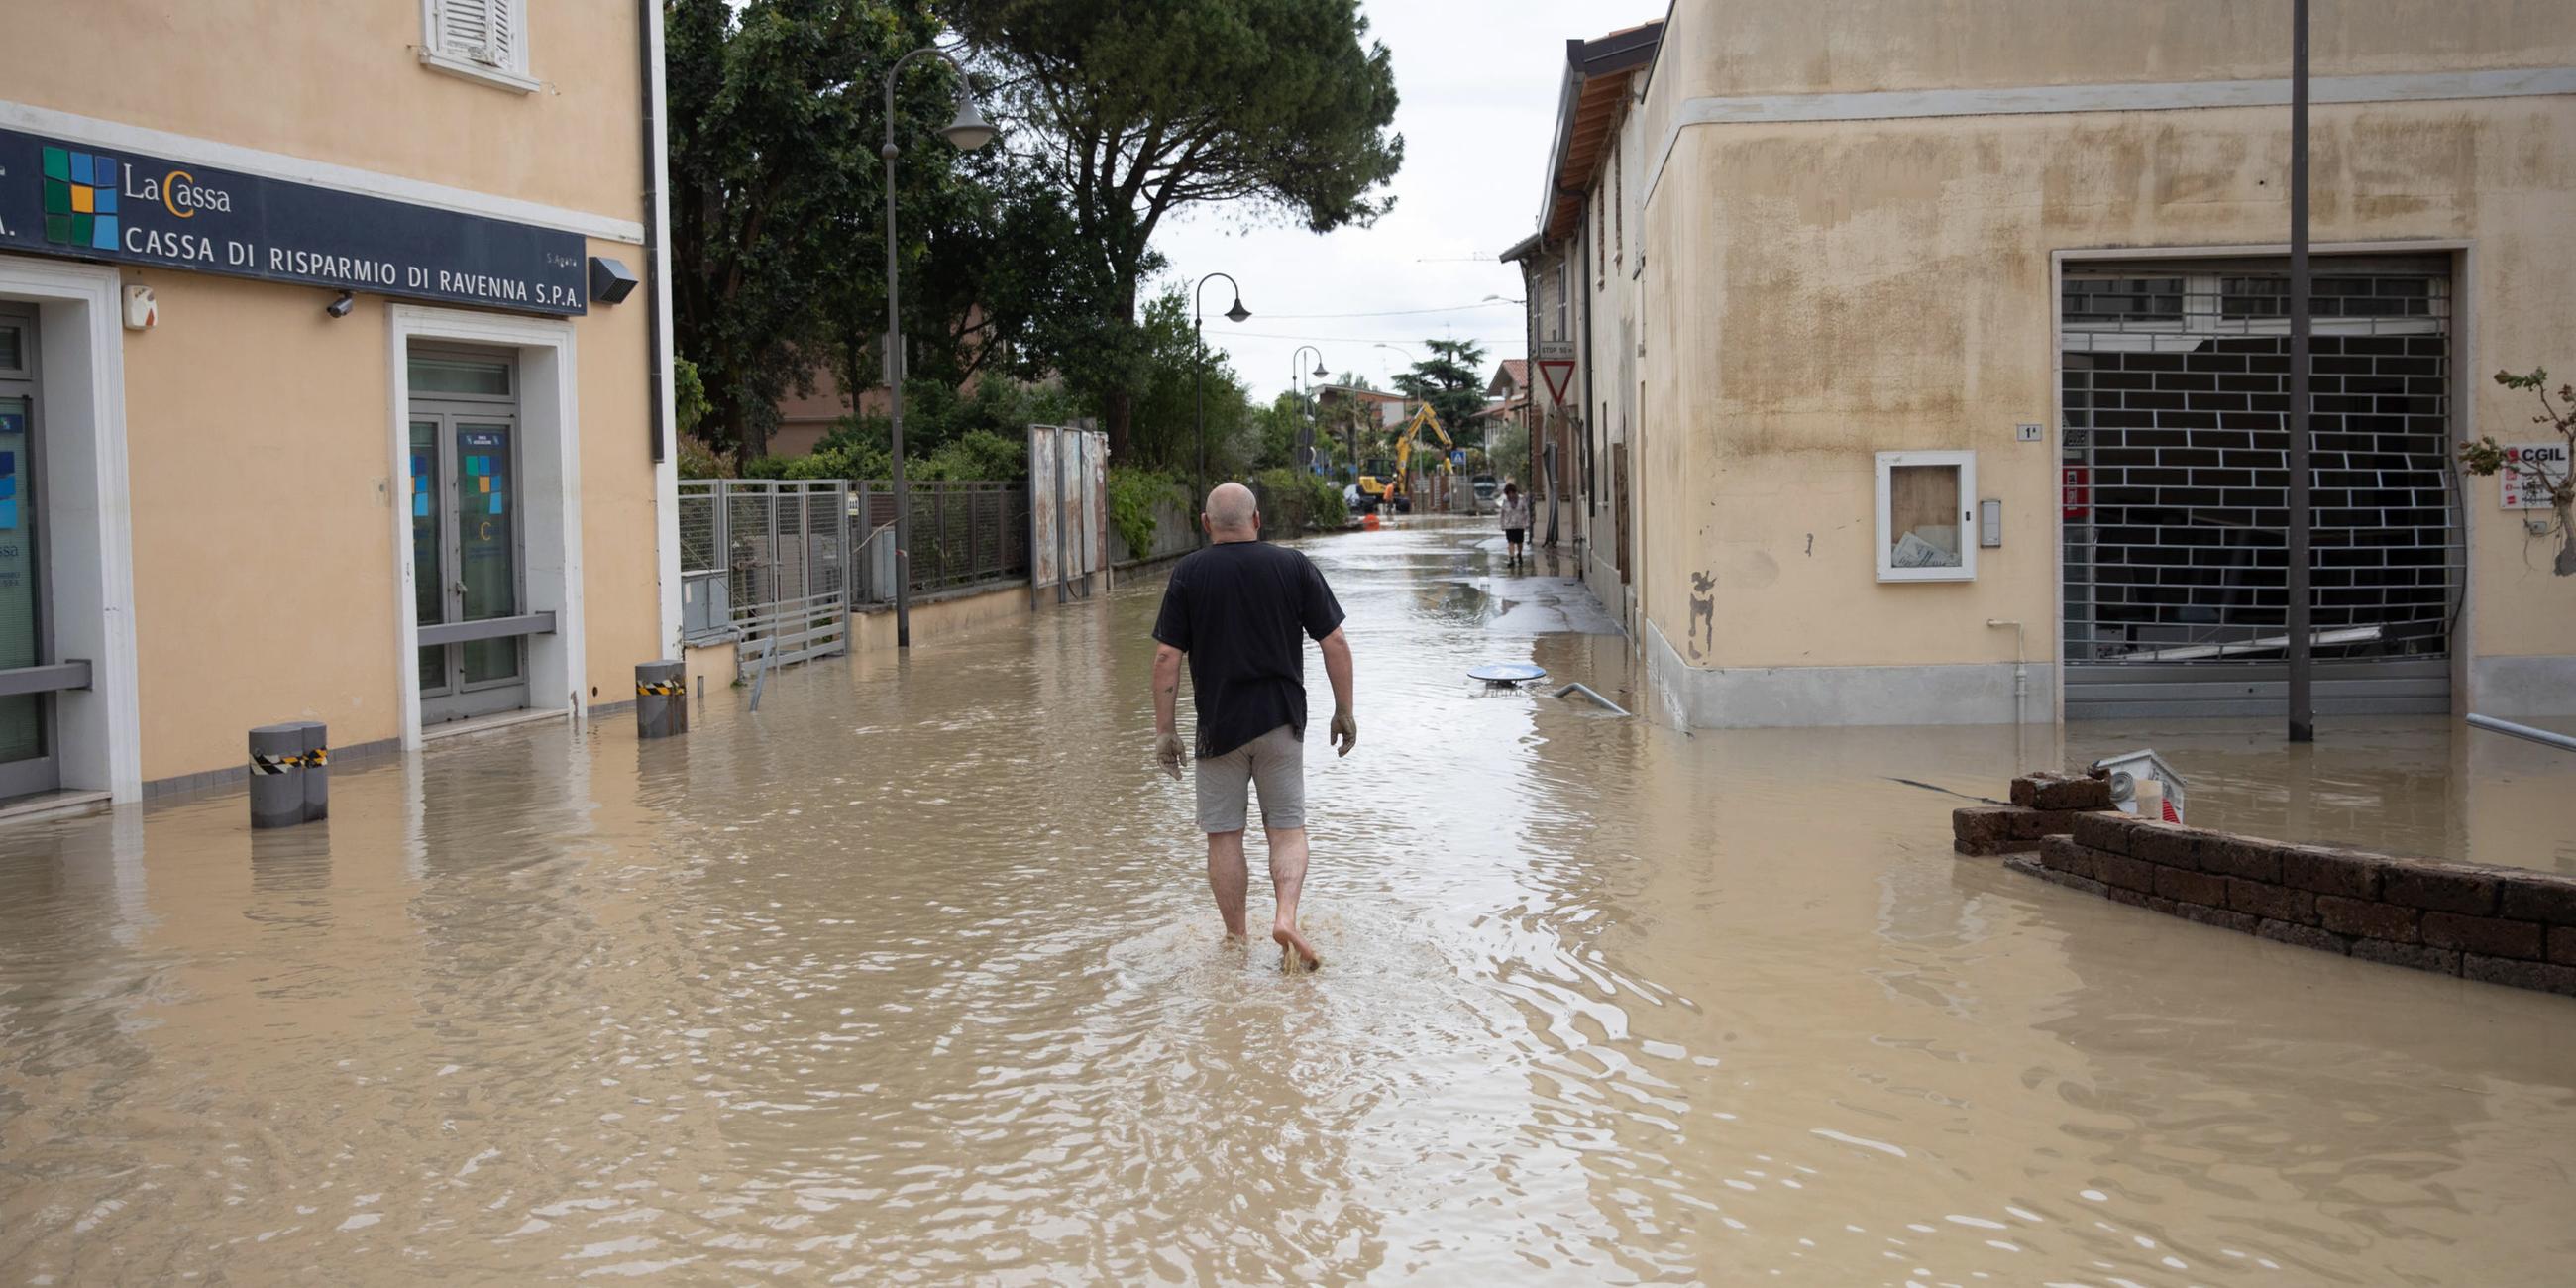 Zu sehen ist ein Mann, der durch dreckiges Wasser zwischen Häusern in der Region Emilia-Romagna watet.